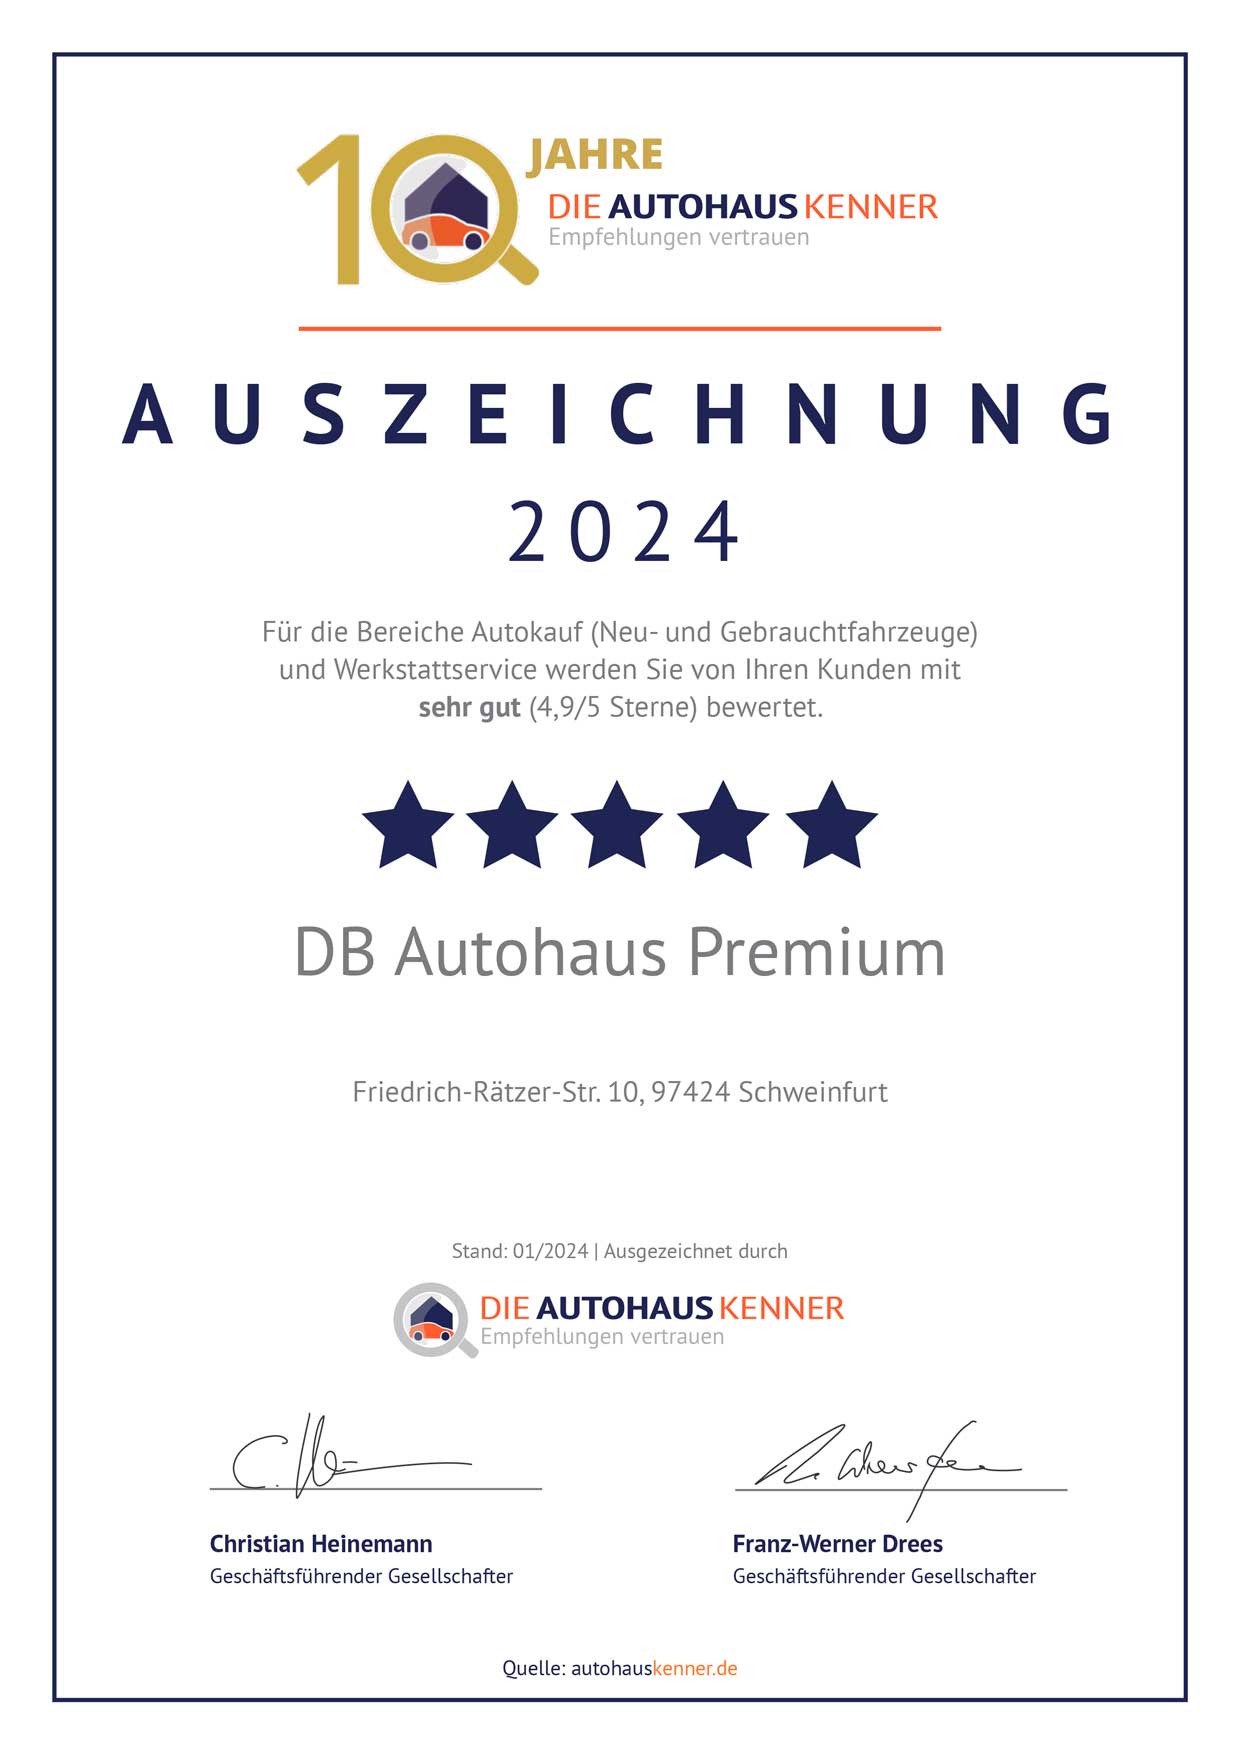 Auszeichnung von Autohauskenner für DB Autohaus Premium Schweinfurt